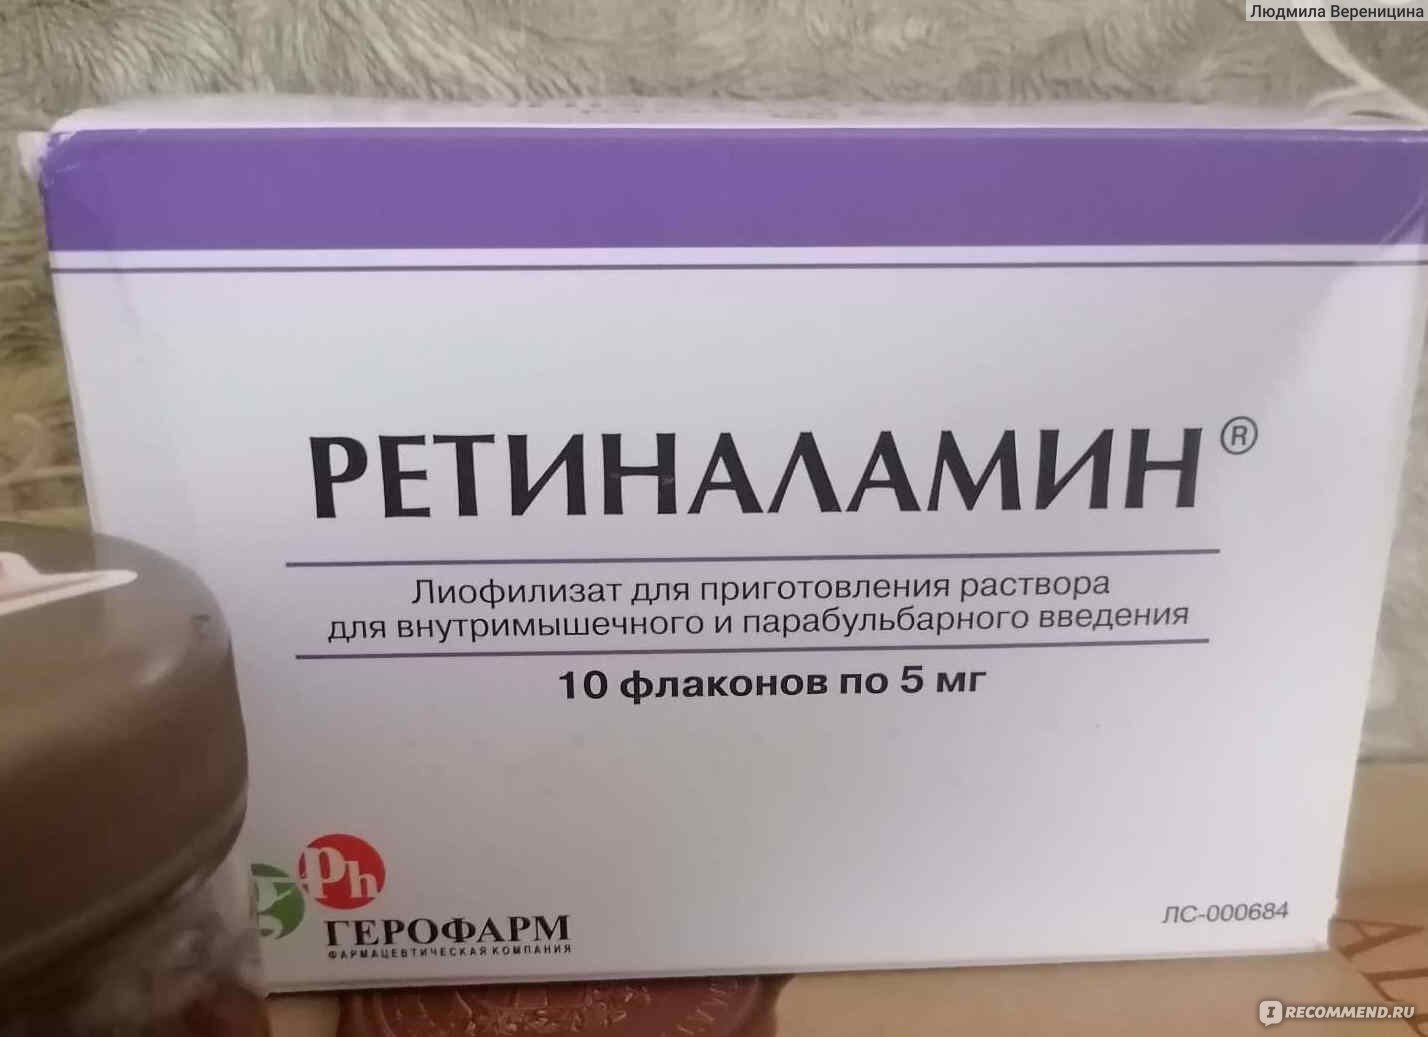 Лекарственный препарат ООО Герофарм Ретиналамин - «Хороший препарат для .